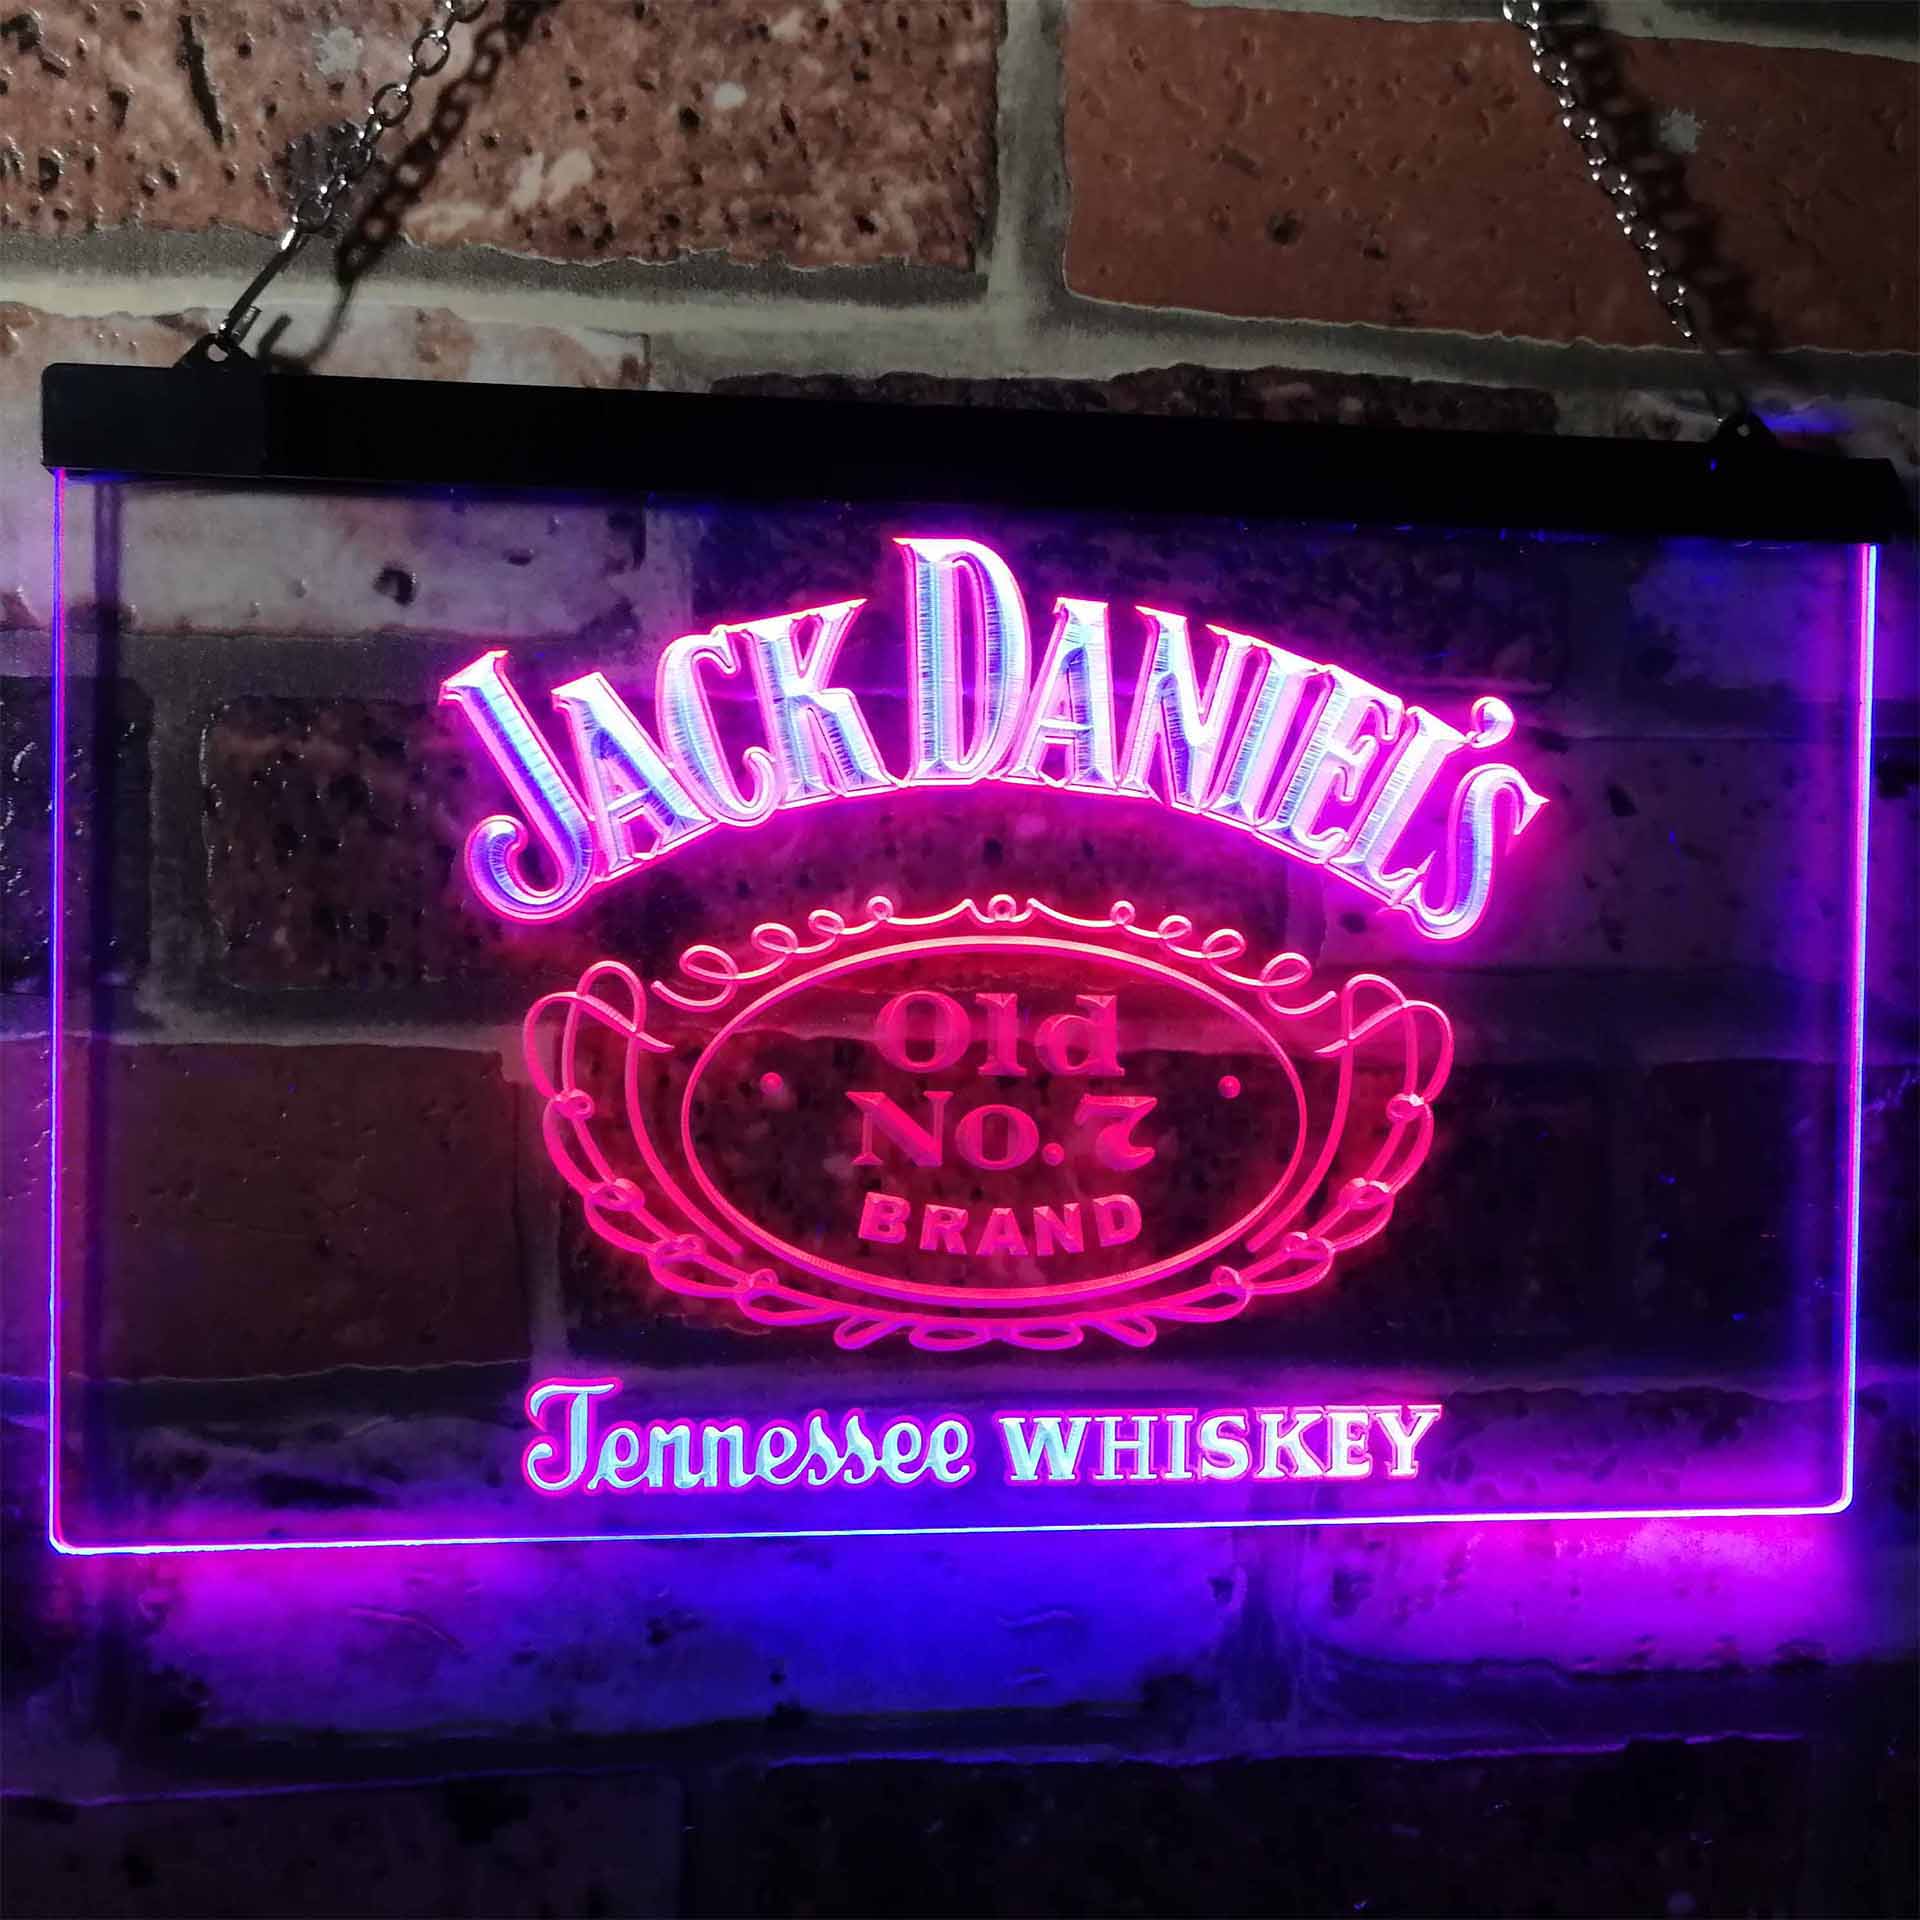 Jack Daniel's Old No. 7 LED Neon Sign